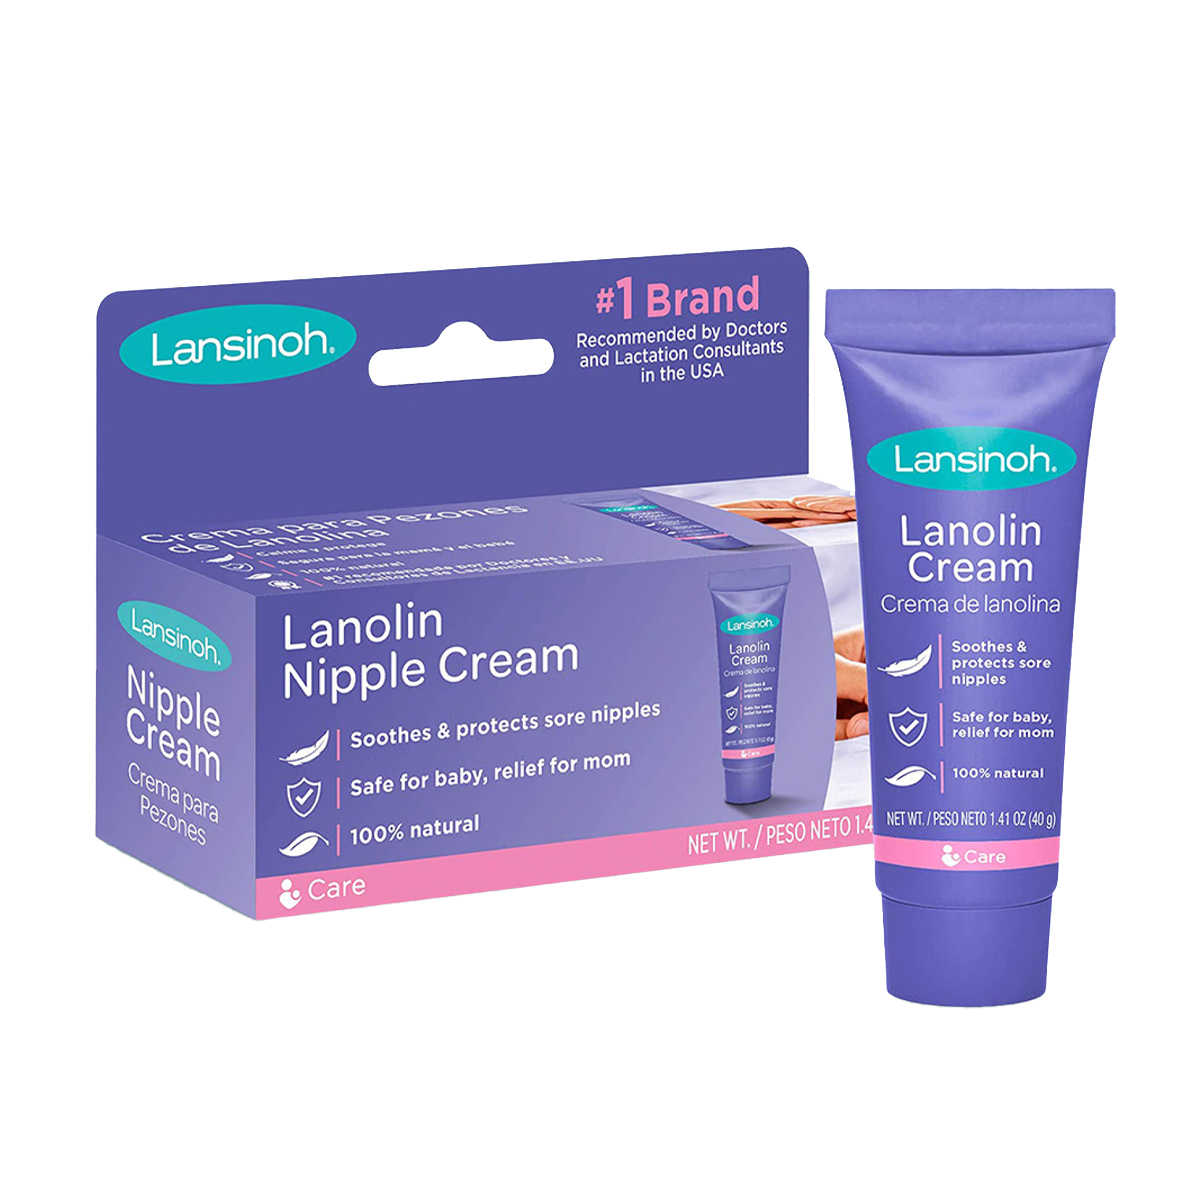 Crema Lanolina de Lansiloh - envase de 40g